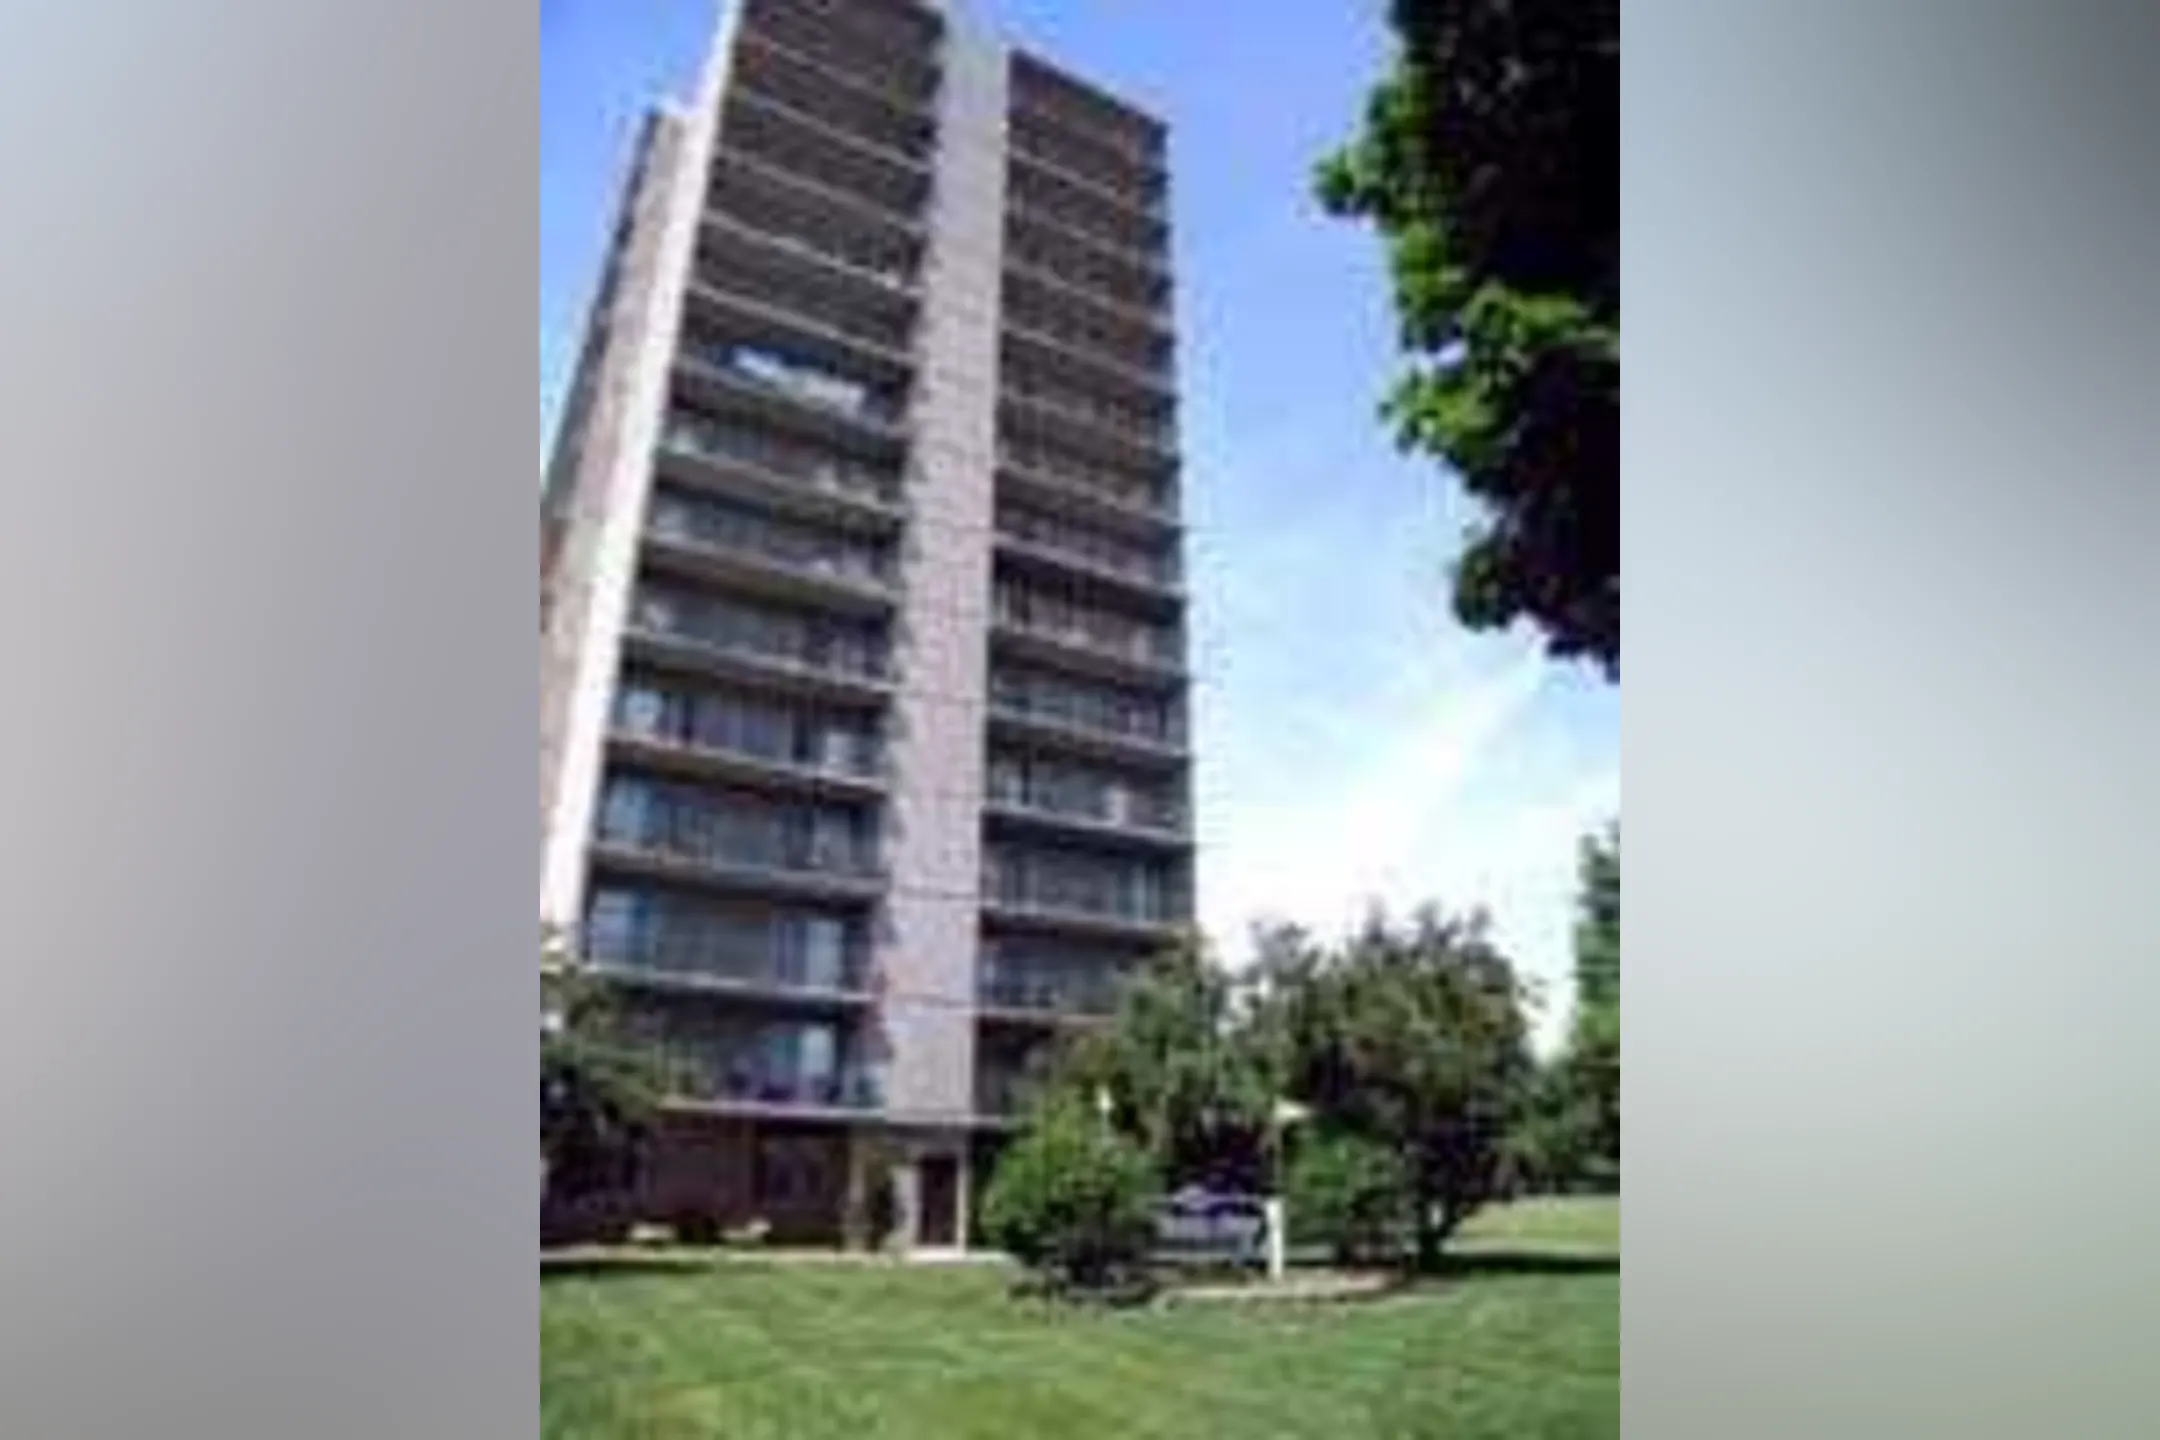 Building - Parkview Place Apartments - Detroit, MI